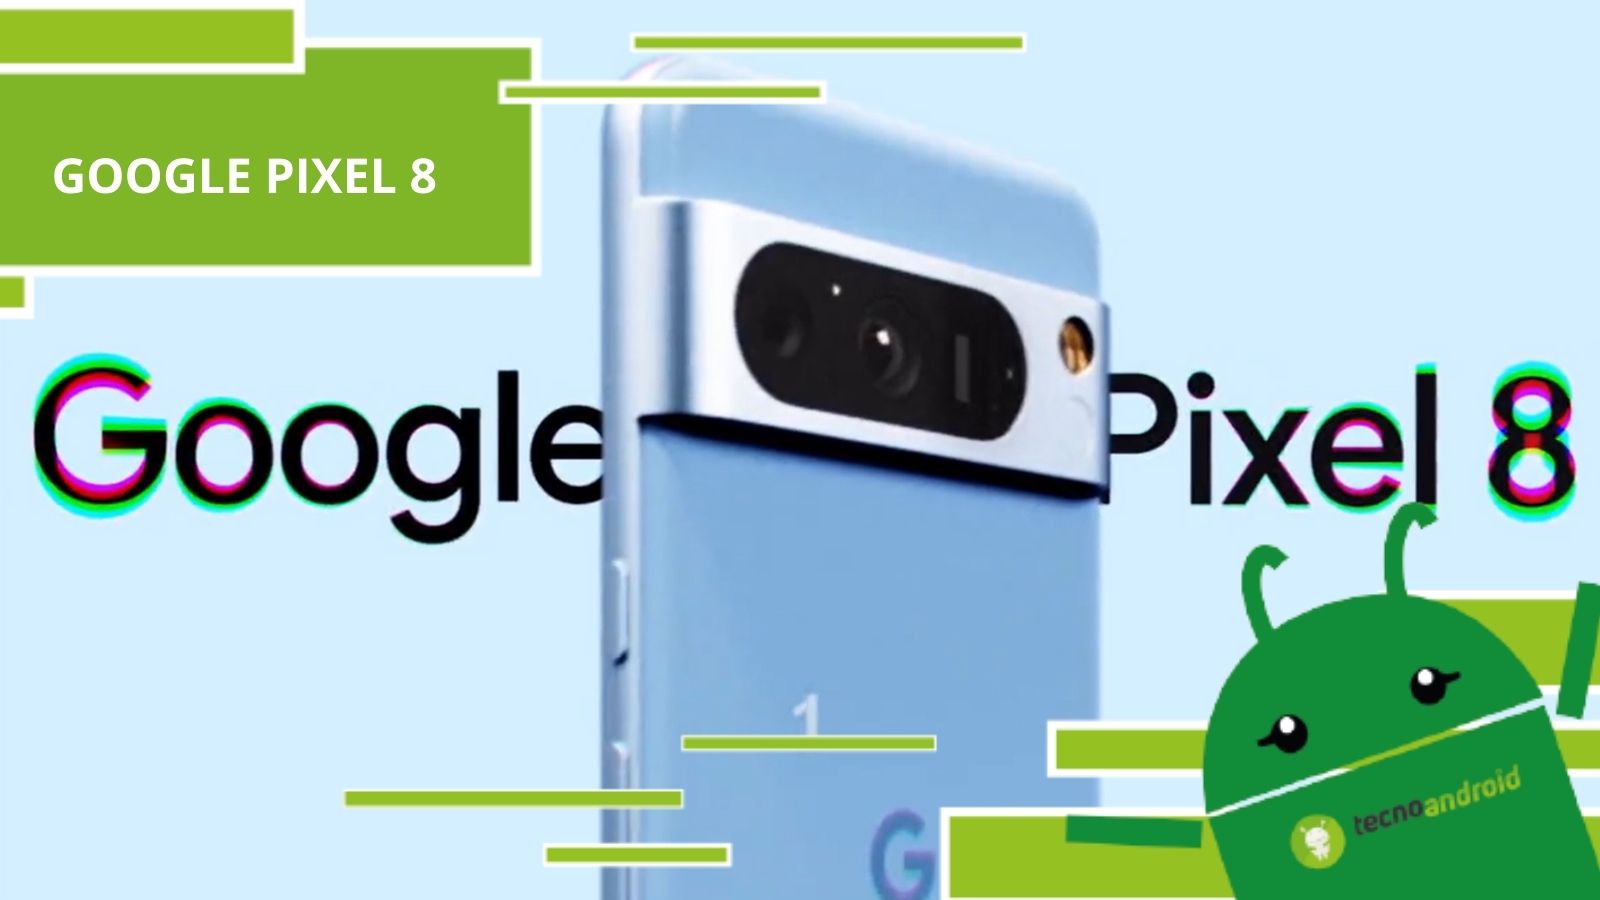 Google Pixel 8, i nuovi smartphone in arrivo nascondono un segreto